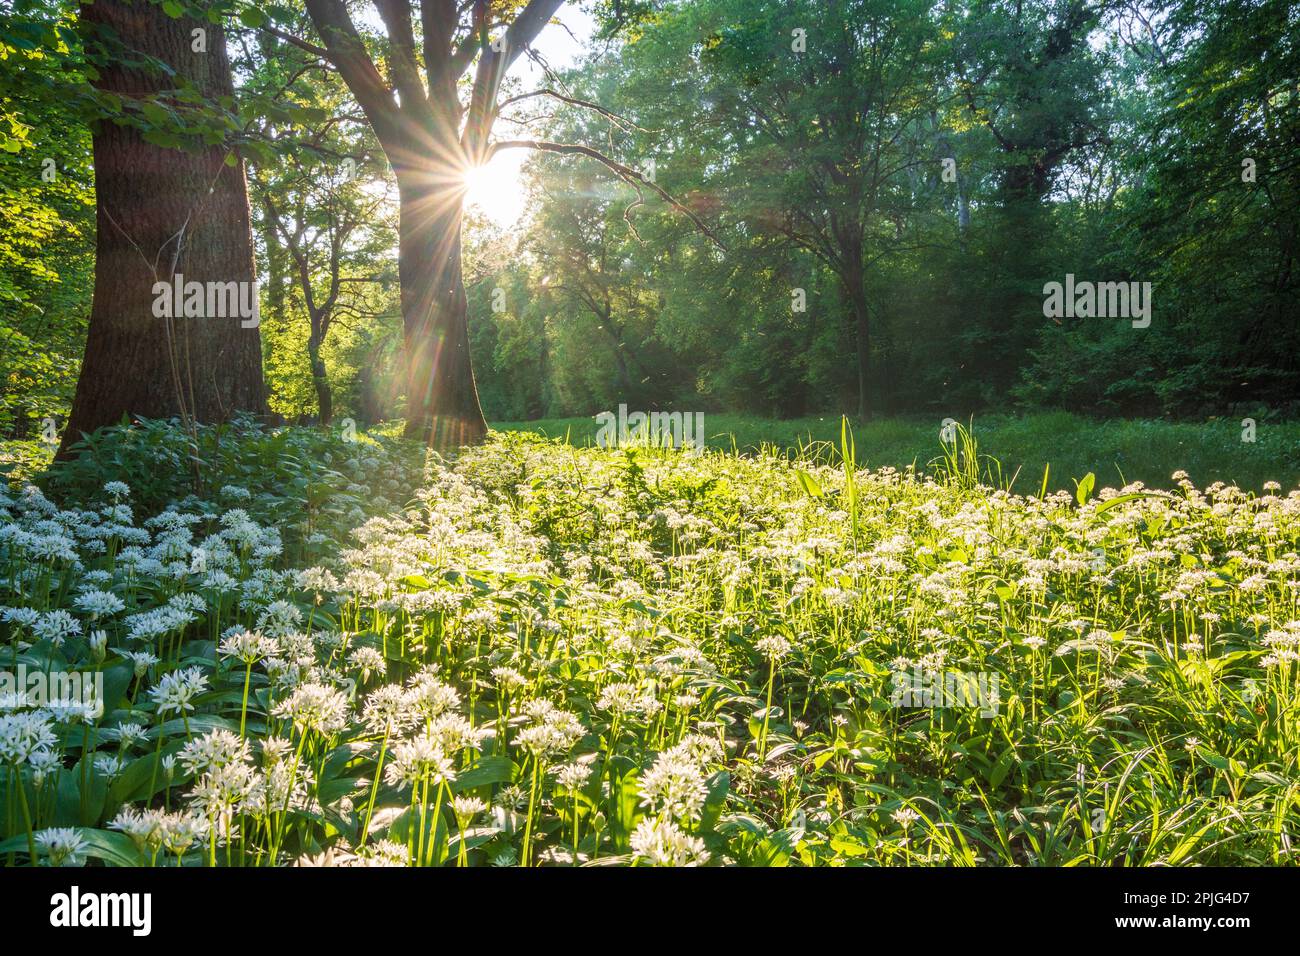 Nationalpark Donau-Auen, Danube-Auen National Park: flowering wild garlic (Allium ursinum), forest, deep standing sun in Donau, Niederösterreich, Lowe Stock Photo